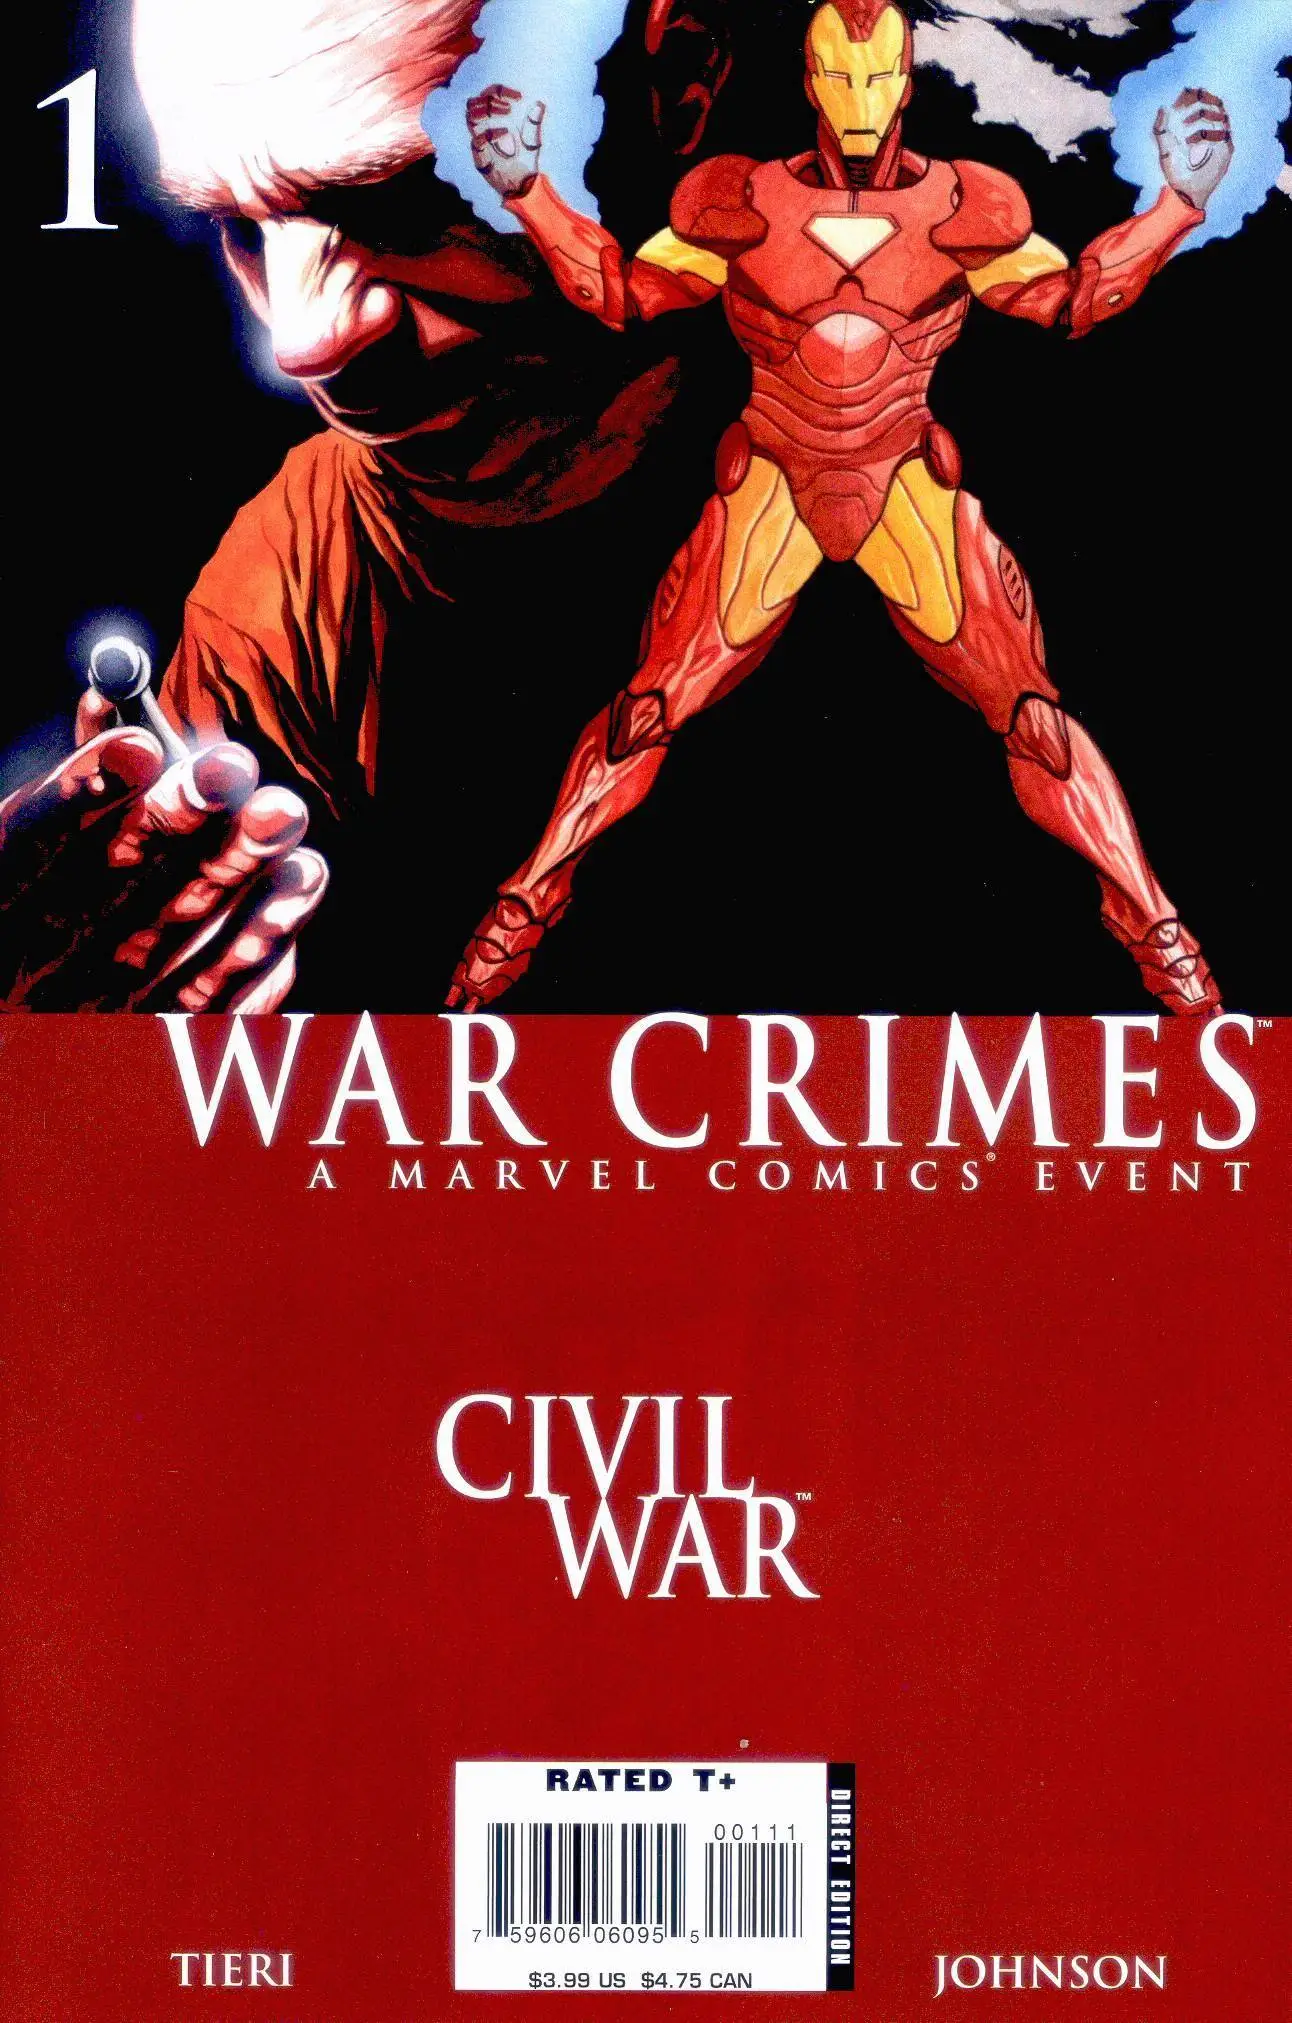 Civil War - War Crimes